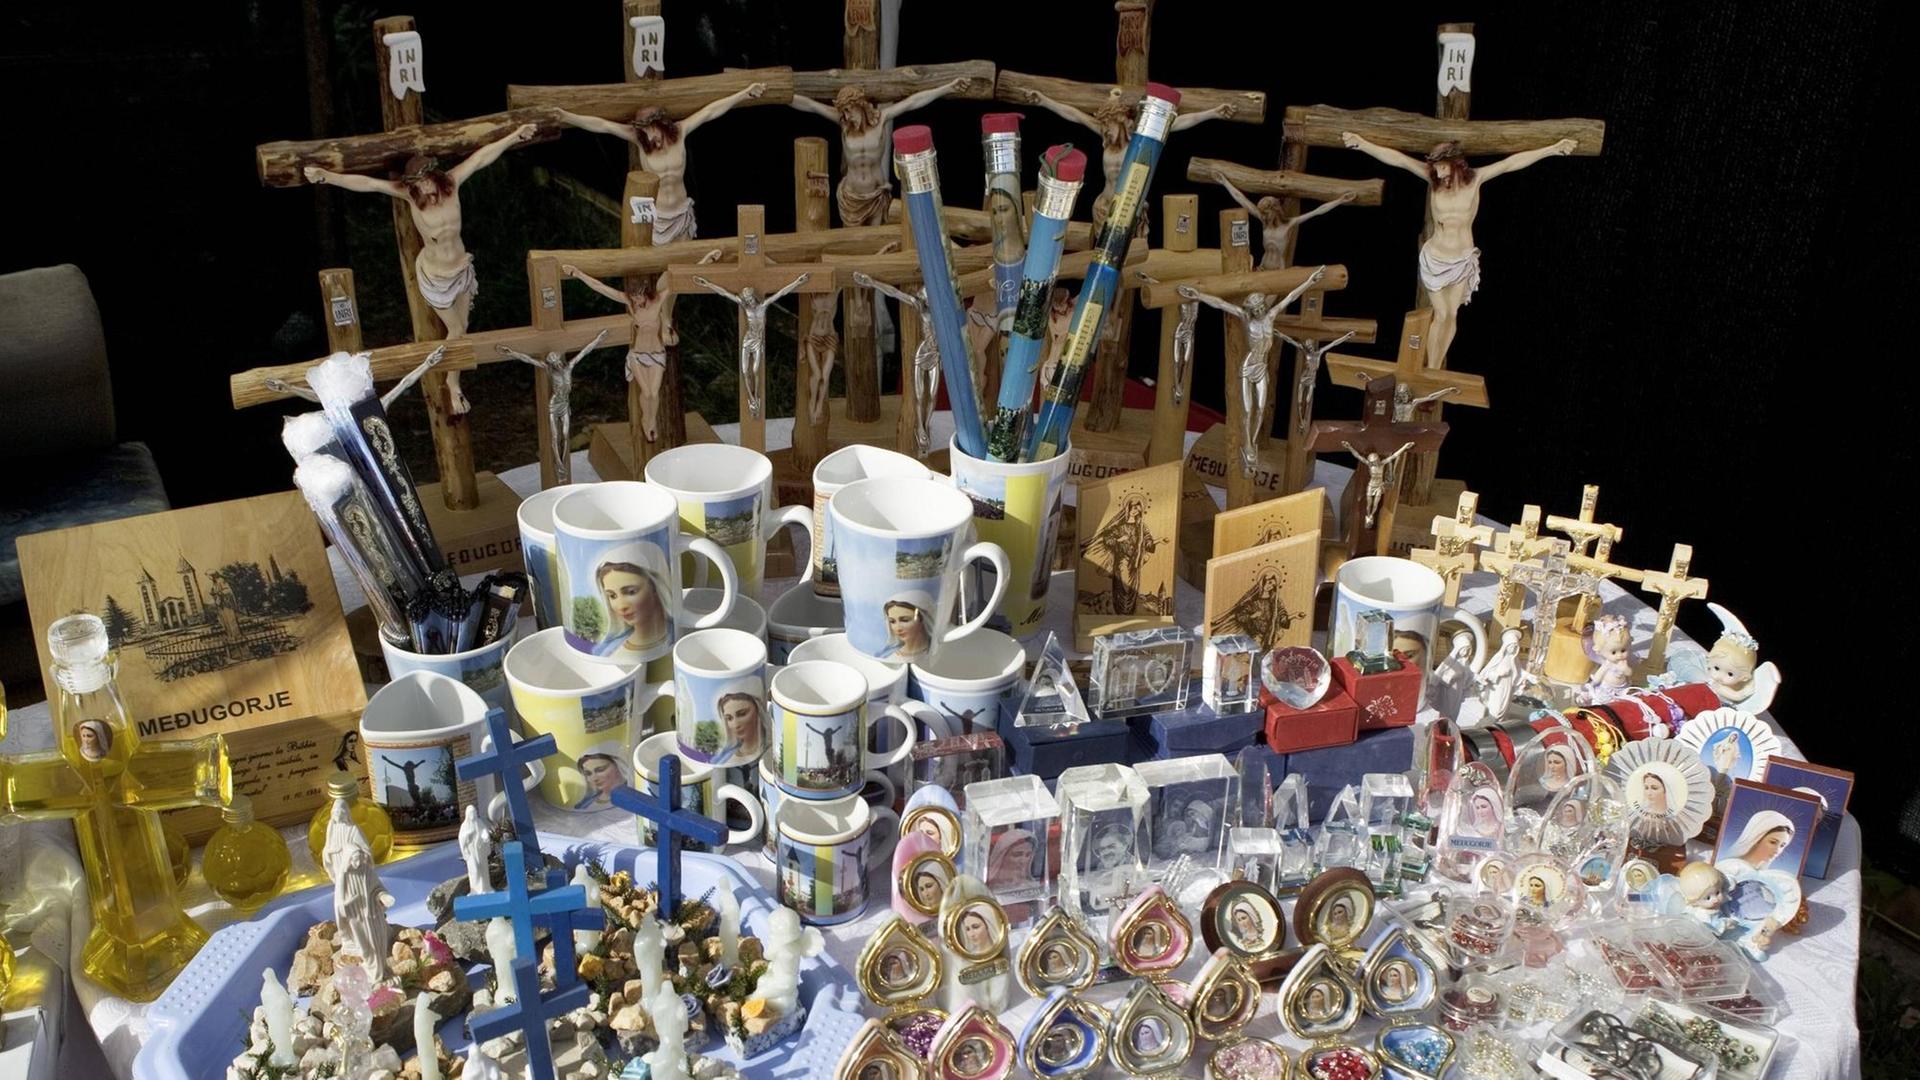 Religiöse Souvenirs - Tassen, Anstecker und Figuren mit Jesus am Kreuz - in Medjugorje